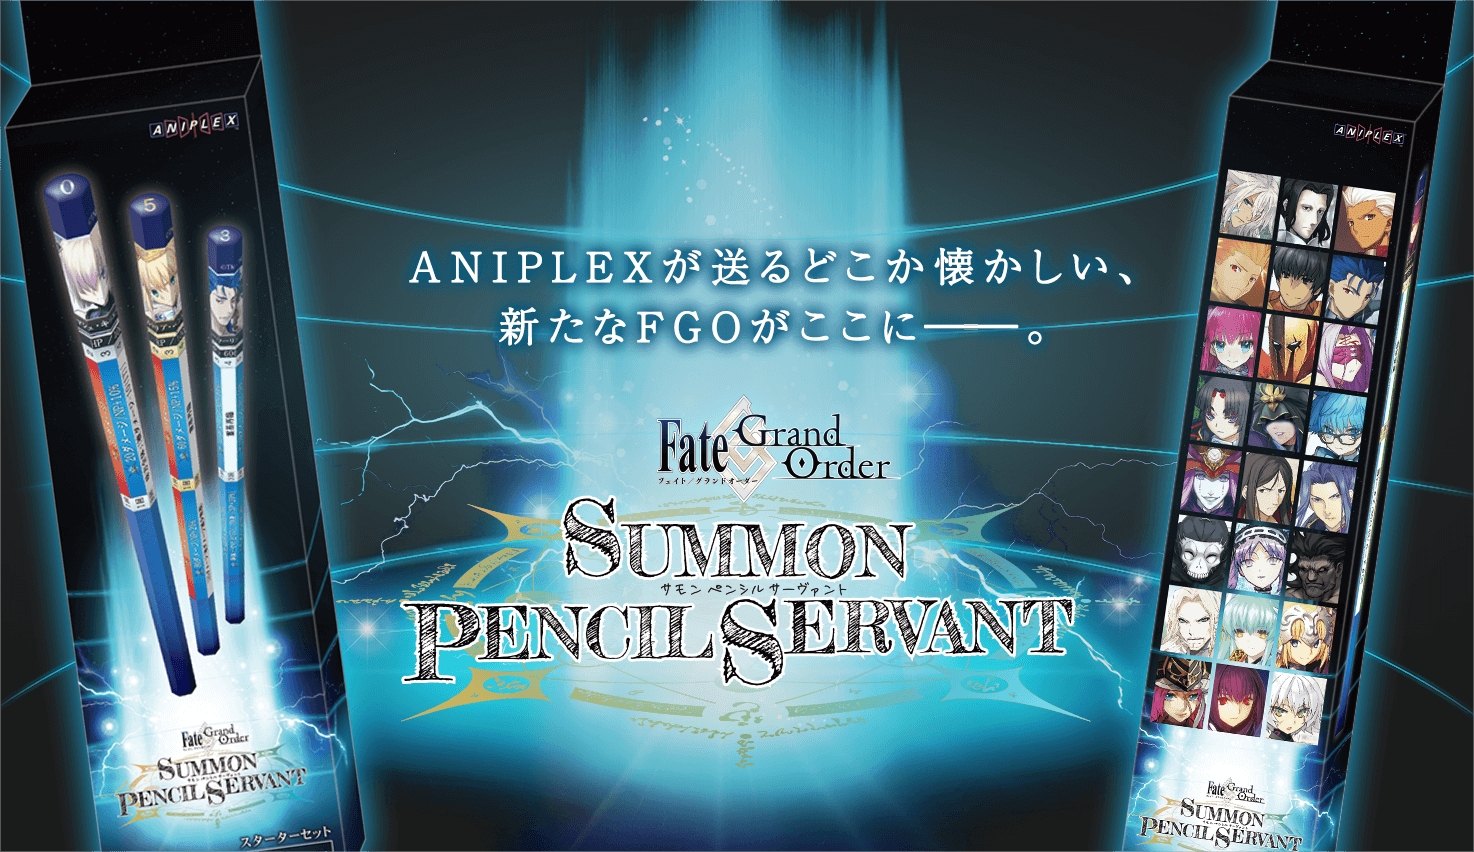 ANIPLEXが送るどこか懐かしい、新たなFGOがここに――。　Fate/Grand Order Summon Pencil Sarvant